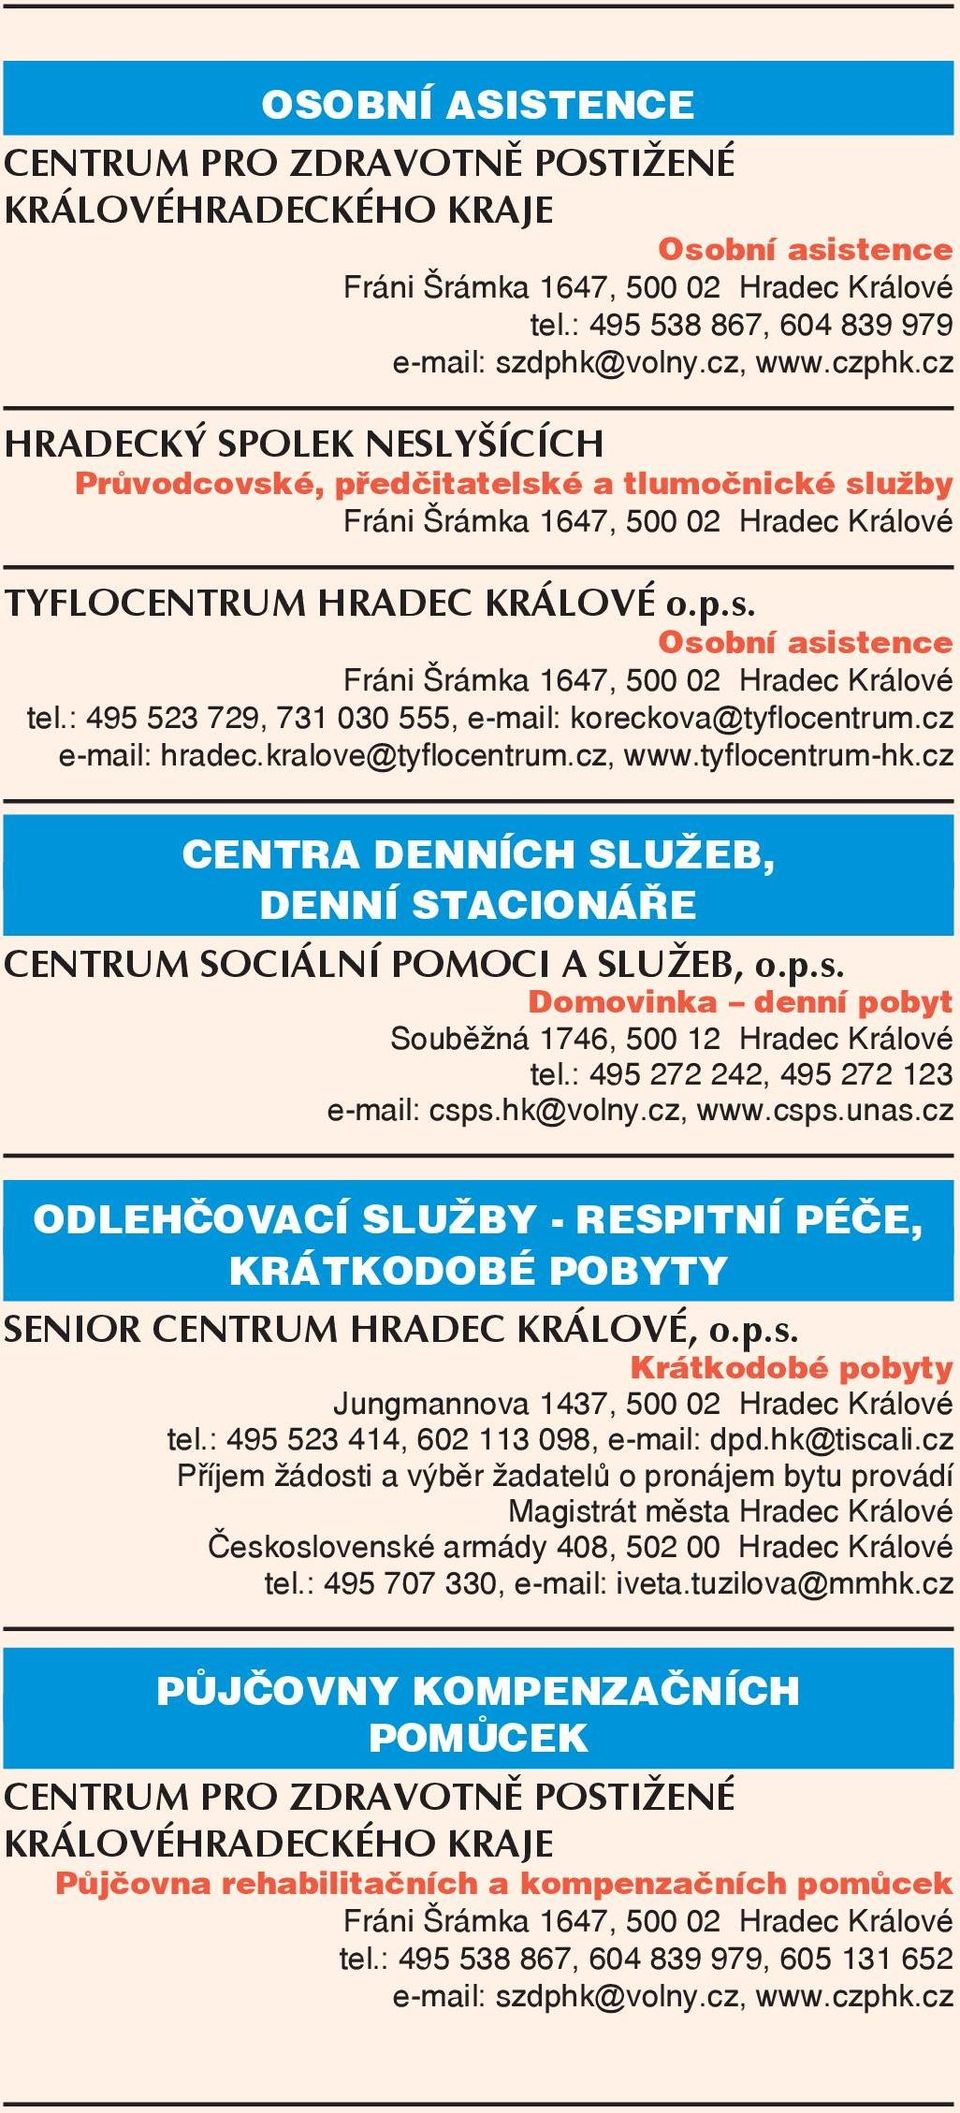 : 495 523 729, 731 030 555, e-mail: koreckova@tyflocentrum.cz e-mail: hradec.kralove@tyflocentrum.cz, www.tyflocentrum-hk.